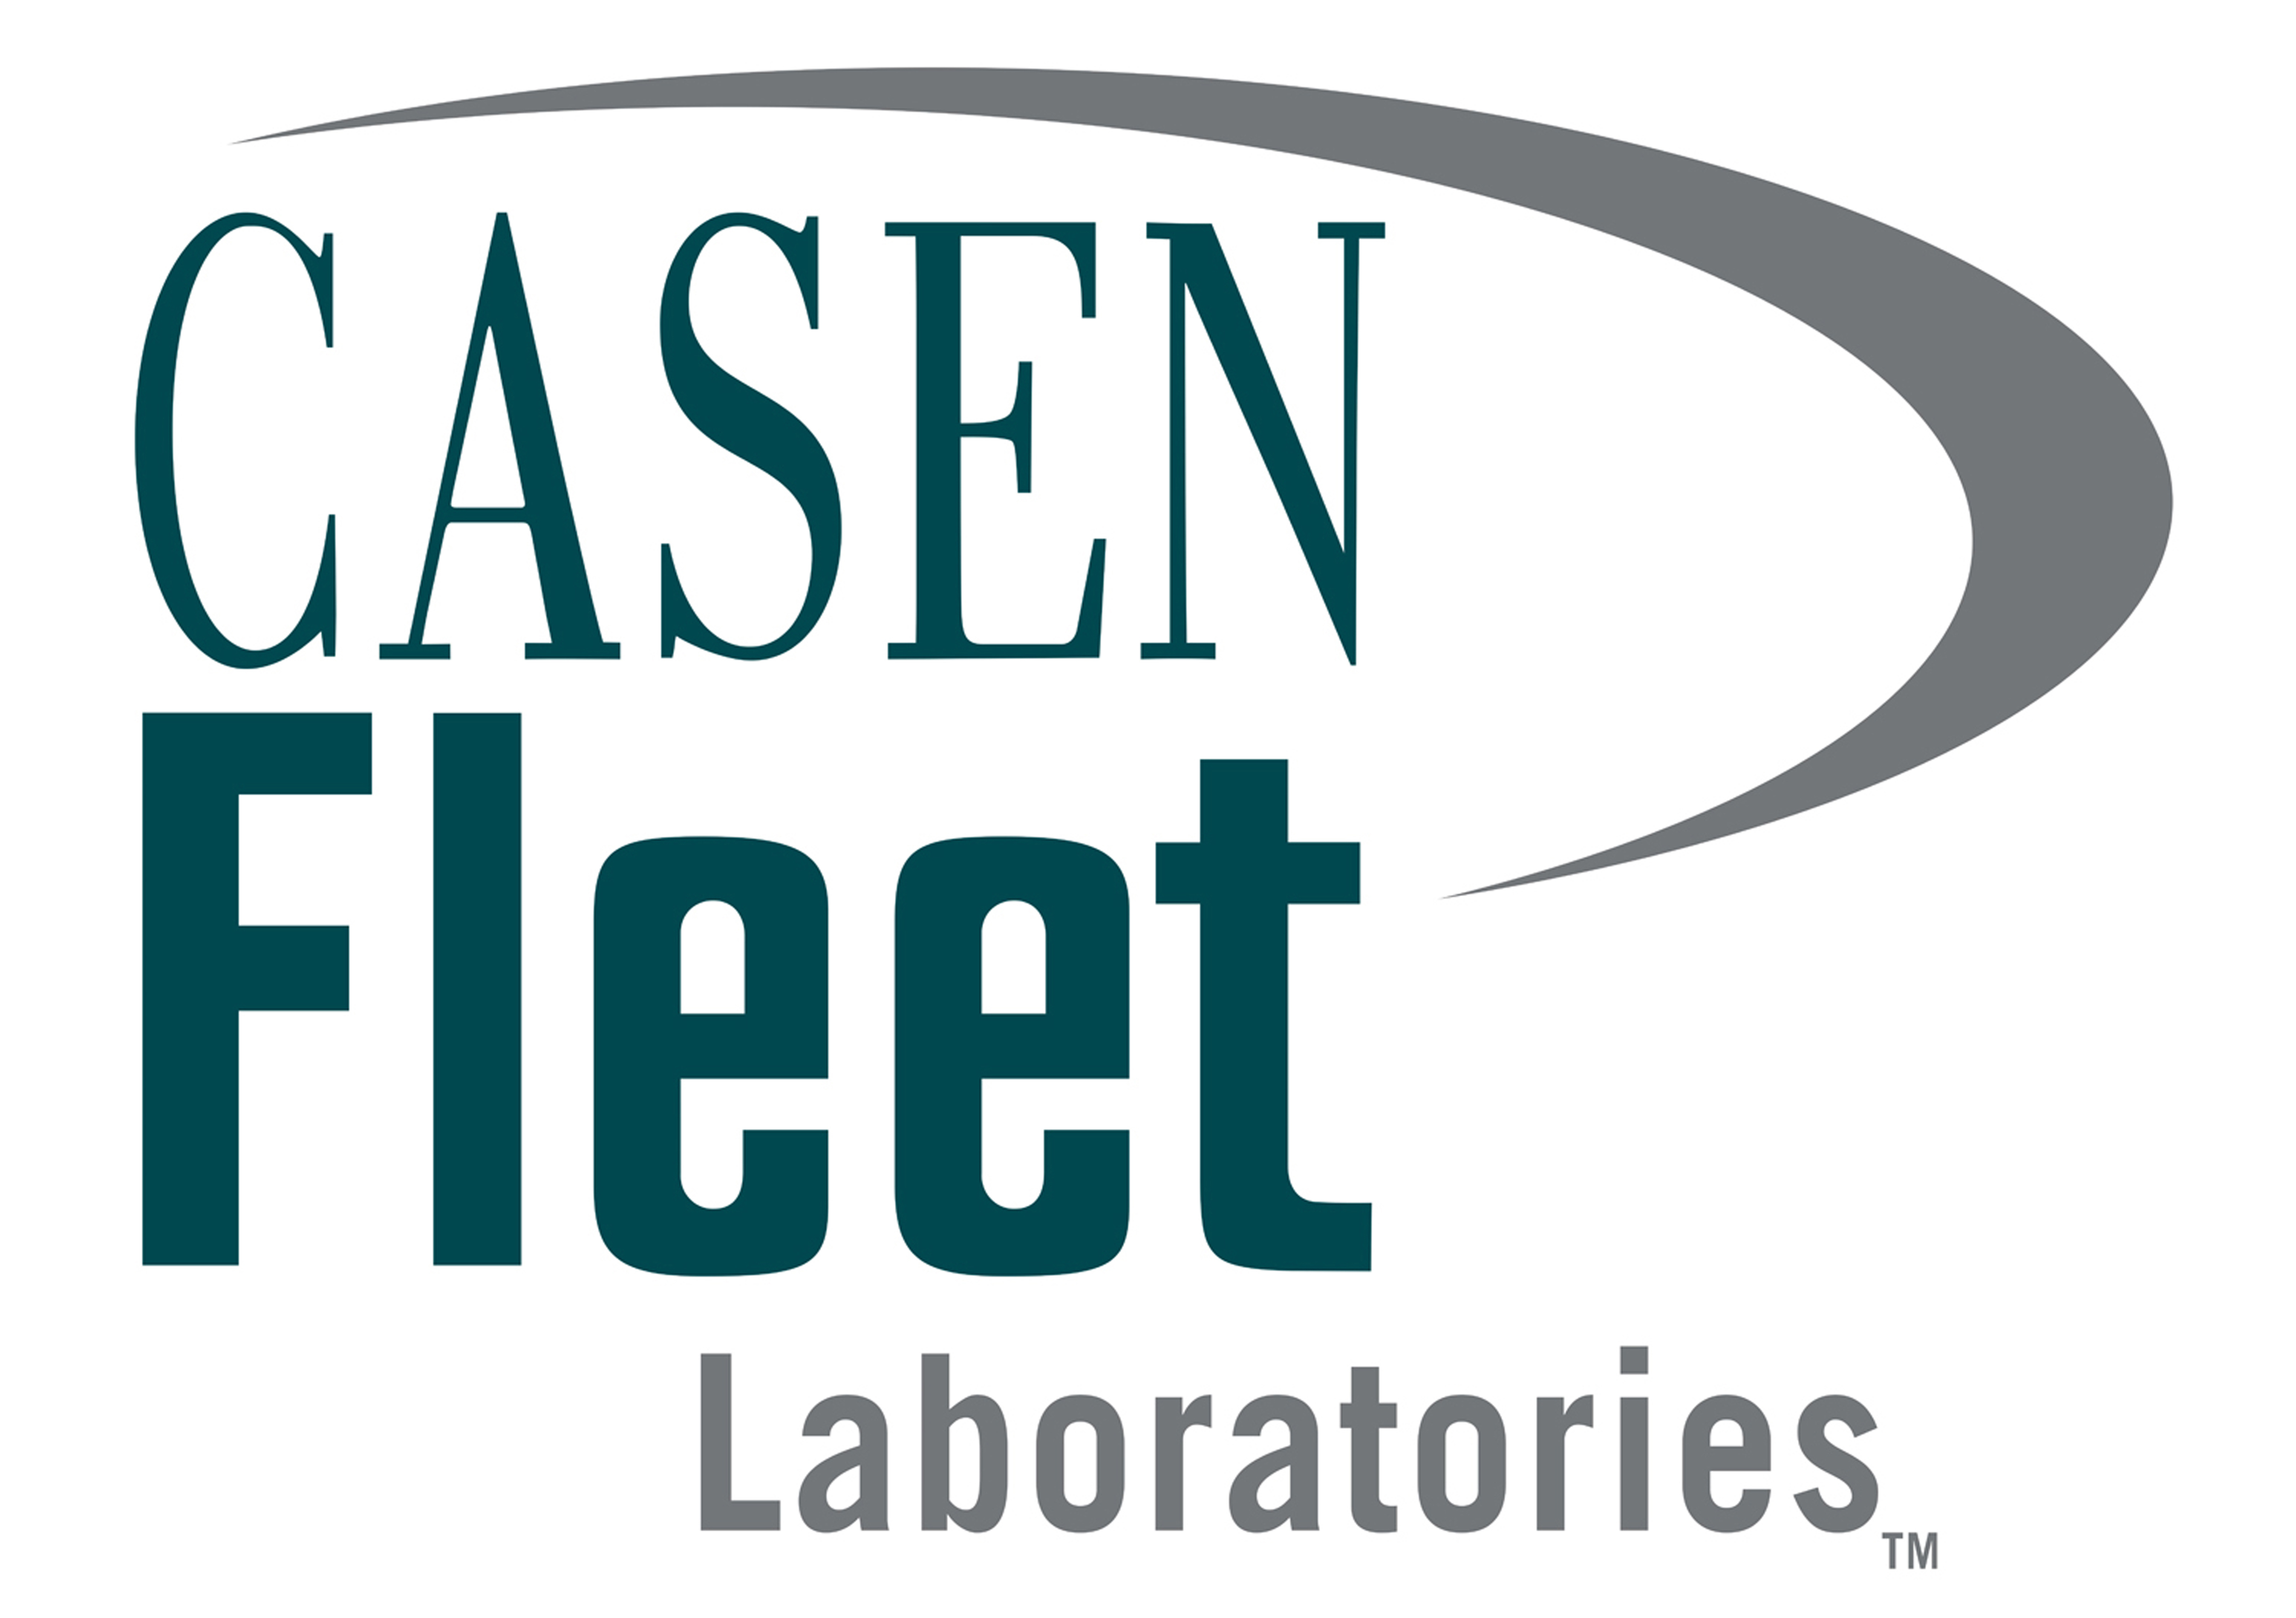 casen fleet logo